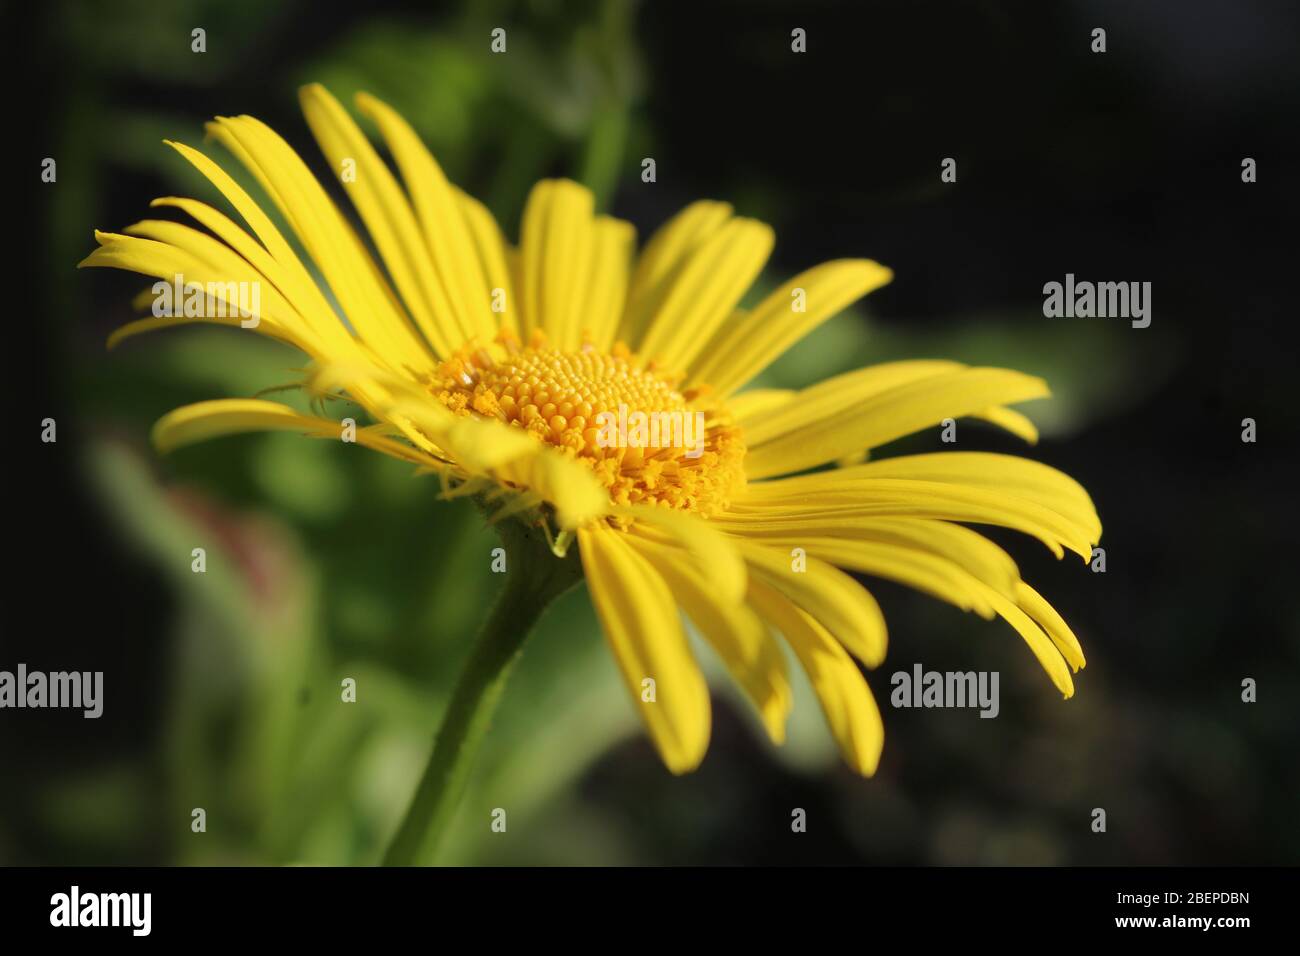 Seite auf Nahaufnahme Bild der schönen gelben Blume von Doronicum orientale 'Magnificum'. Eine beliebte Frühlingsblüte Gartenpflanze. Stockfoto